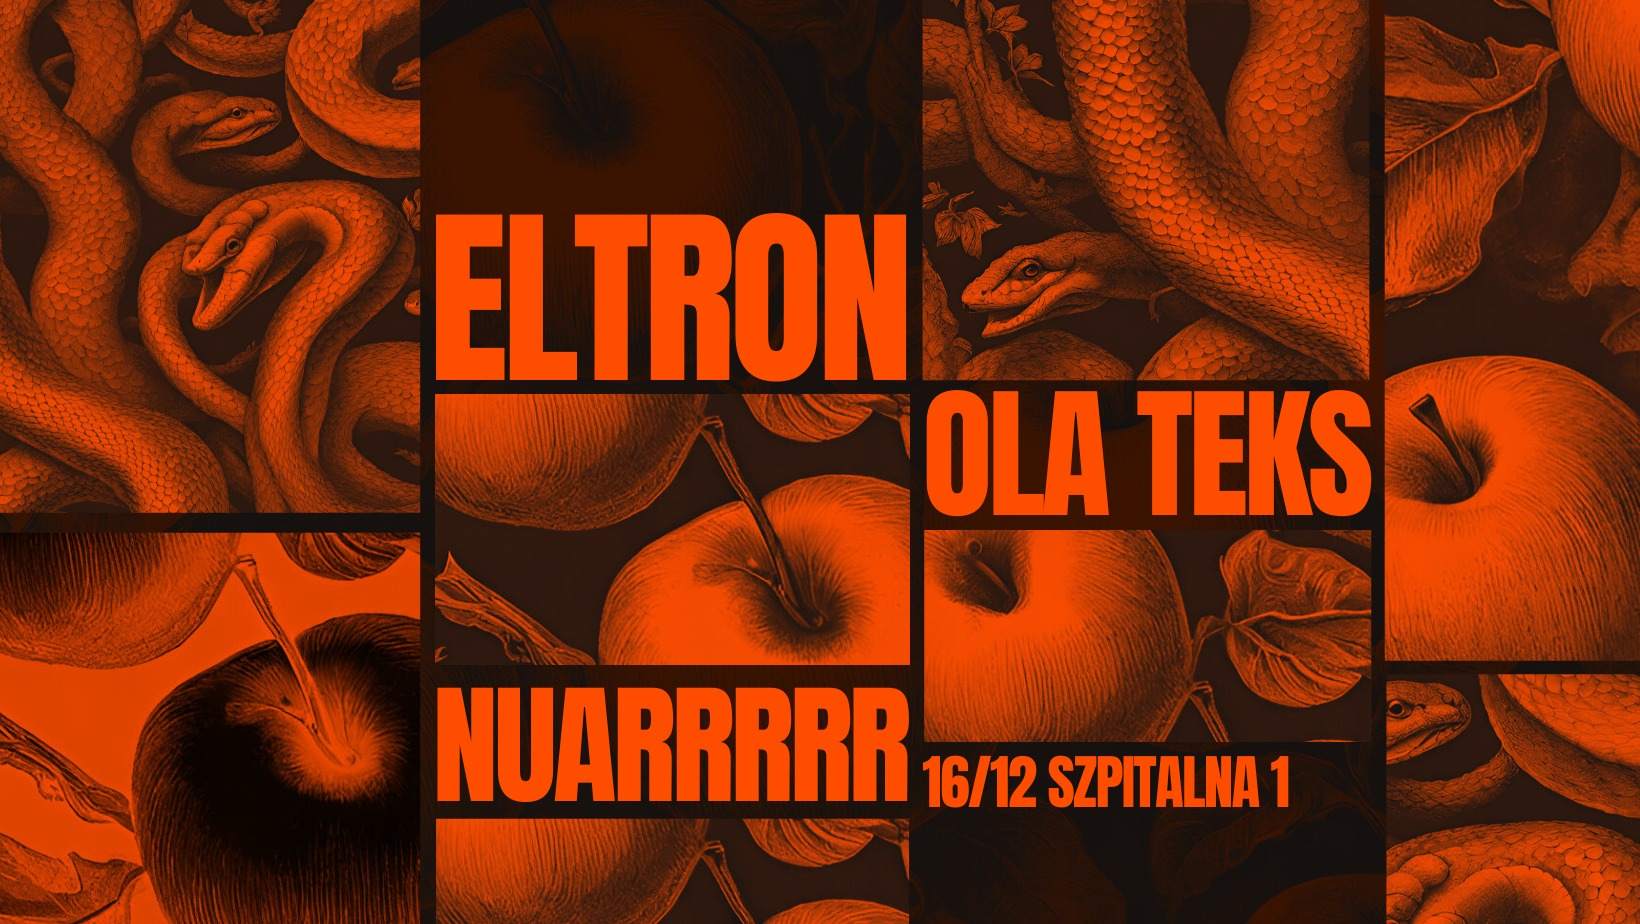 SZ1: Eltron, Ola Teks, nuarrrrr - フライヤー表